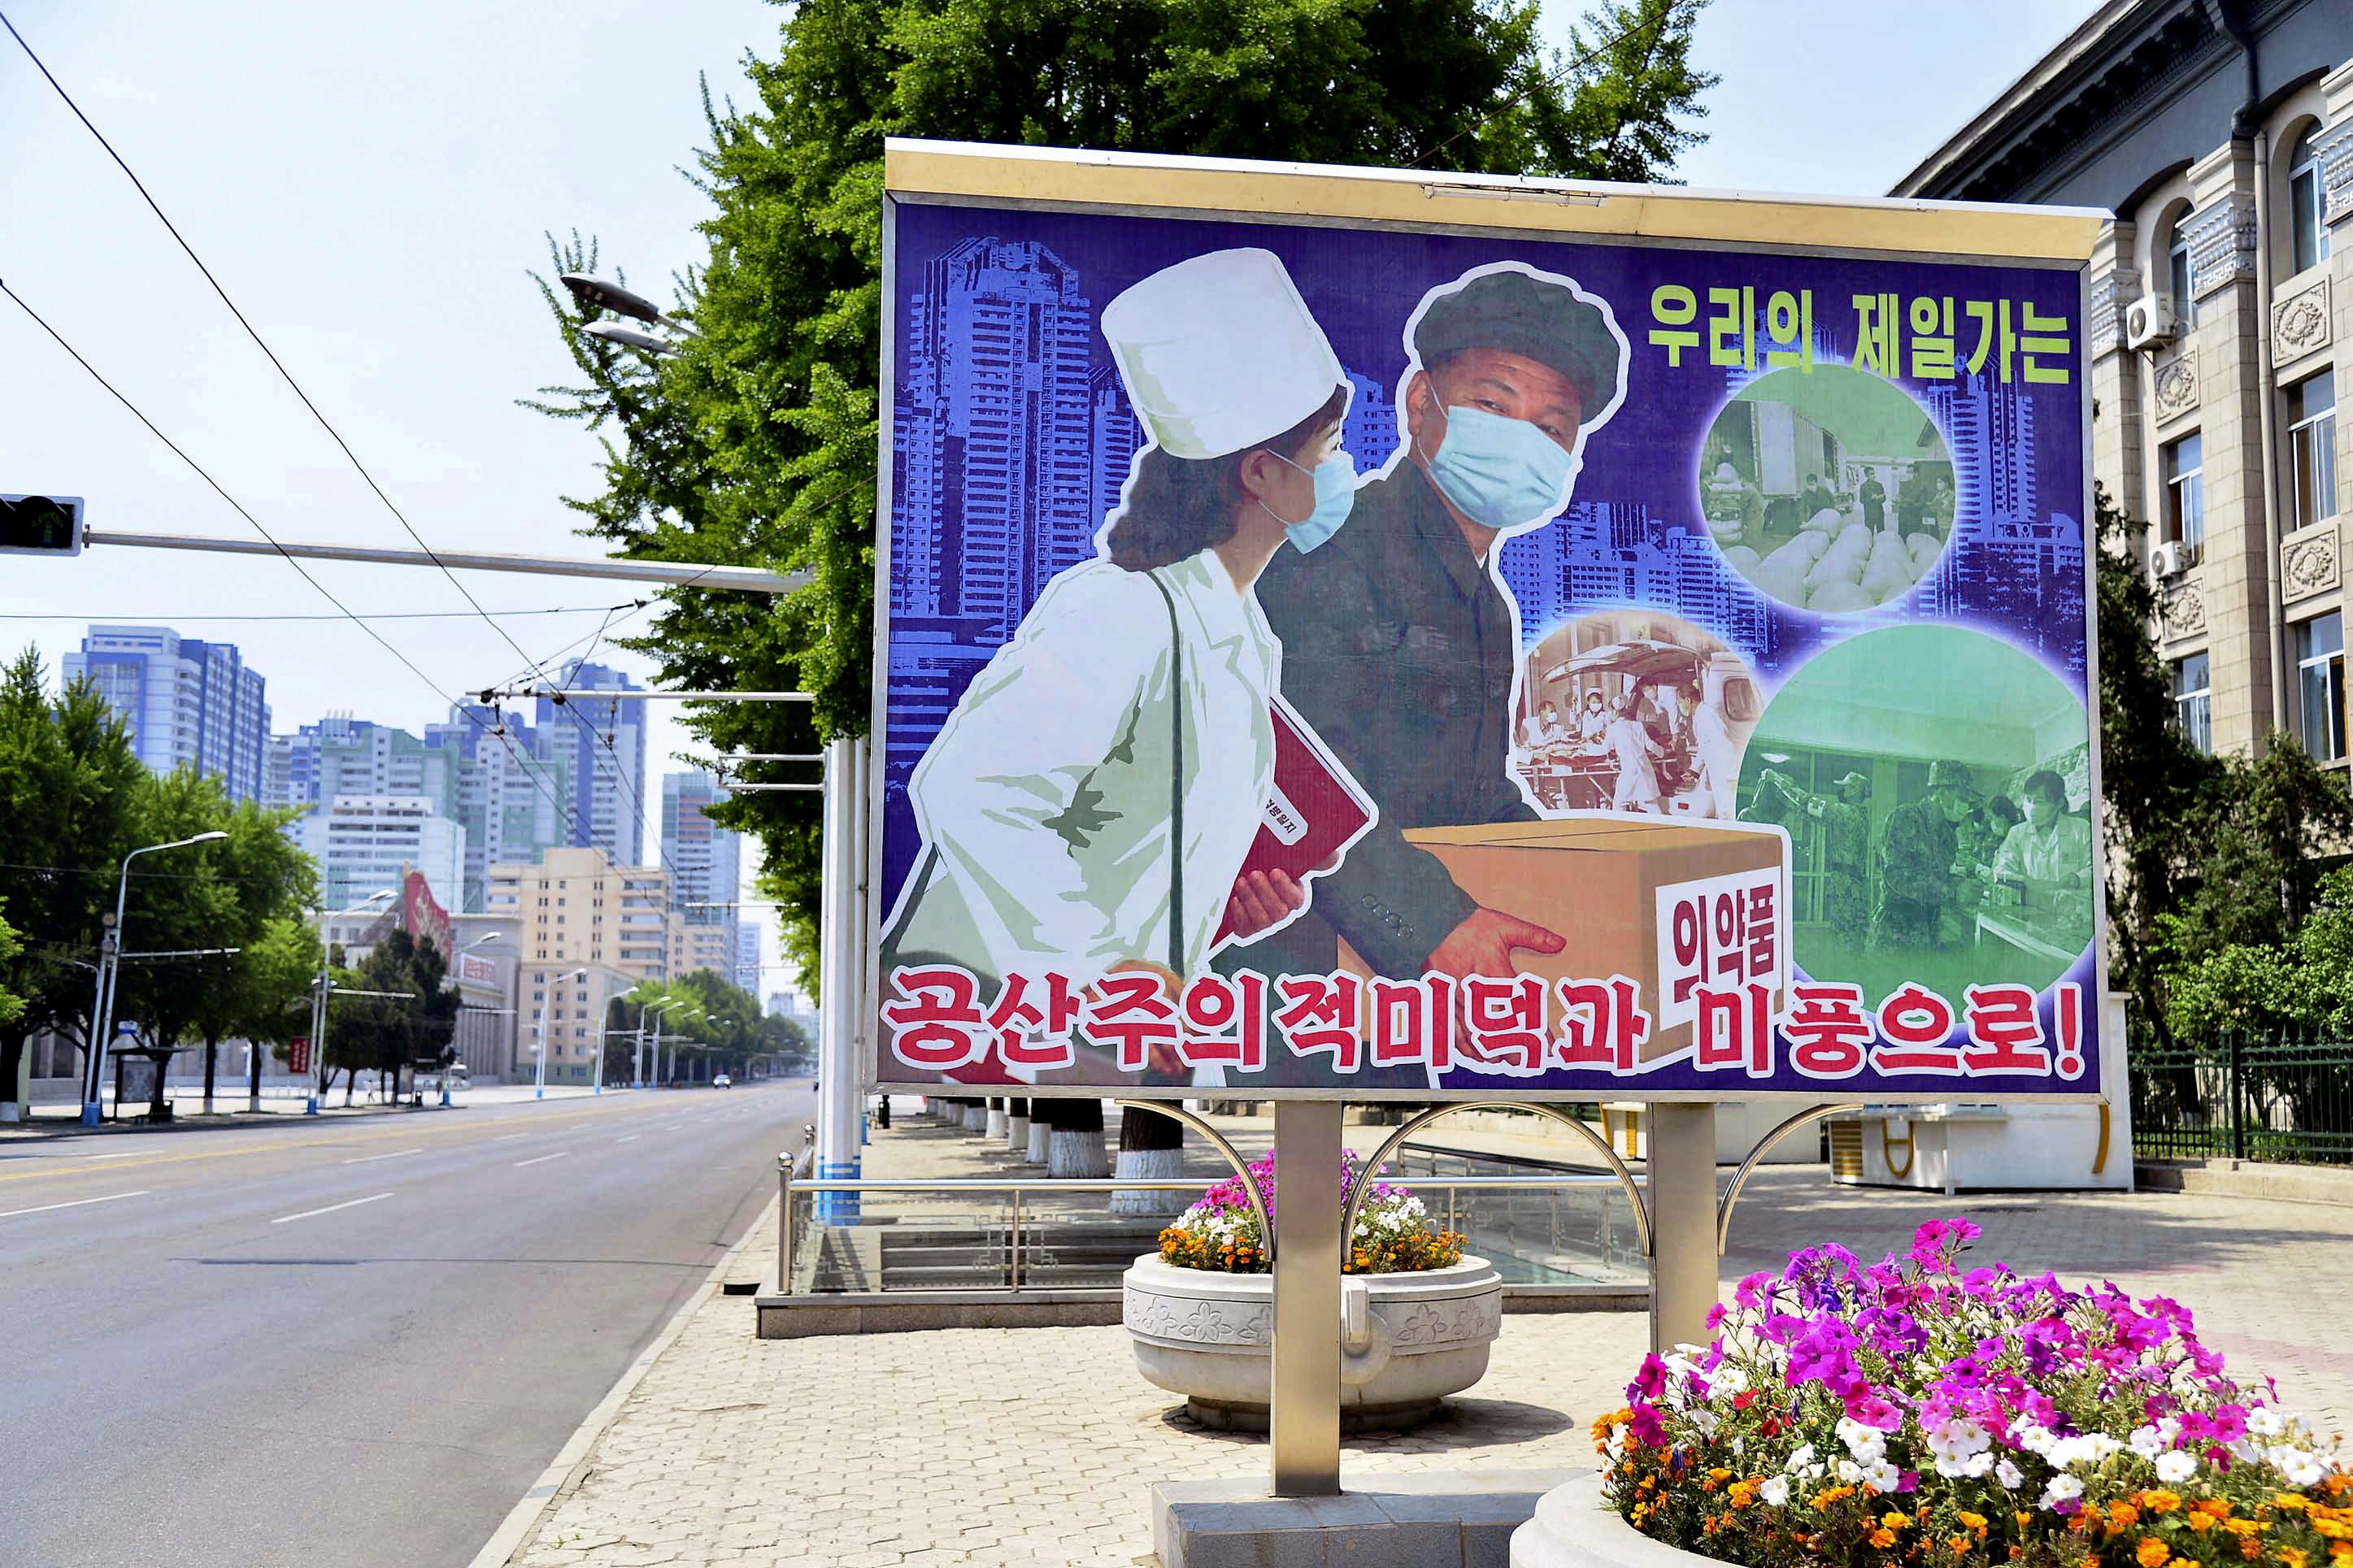 PHOTO DE DOSSIER: Un panneau montrant une scène de transport de produits médicaux est affiché dans une rue vide au milieu des craintes croissantes concernant la propagation de la maladie à coronavirus (COVID-19), à Pyongyang, en Corée du Nord. Kyodo via REUTERS